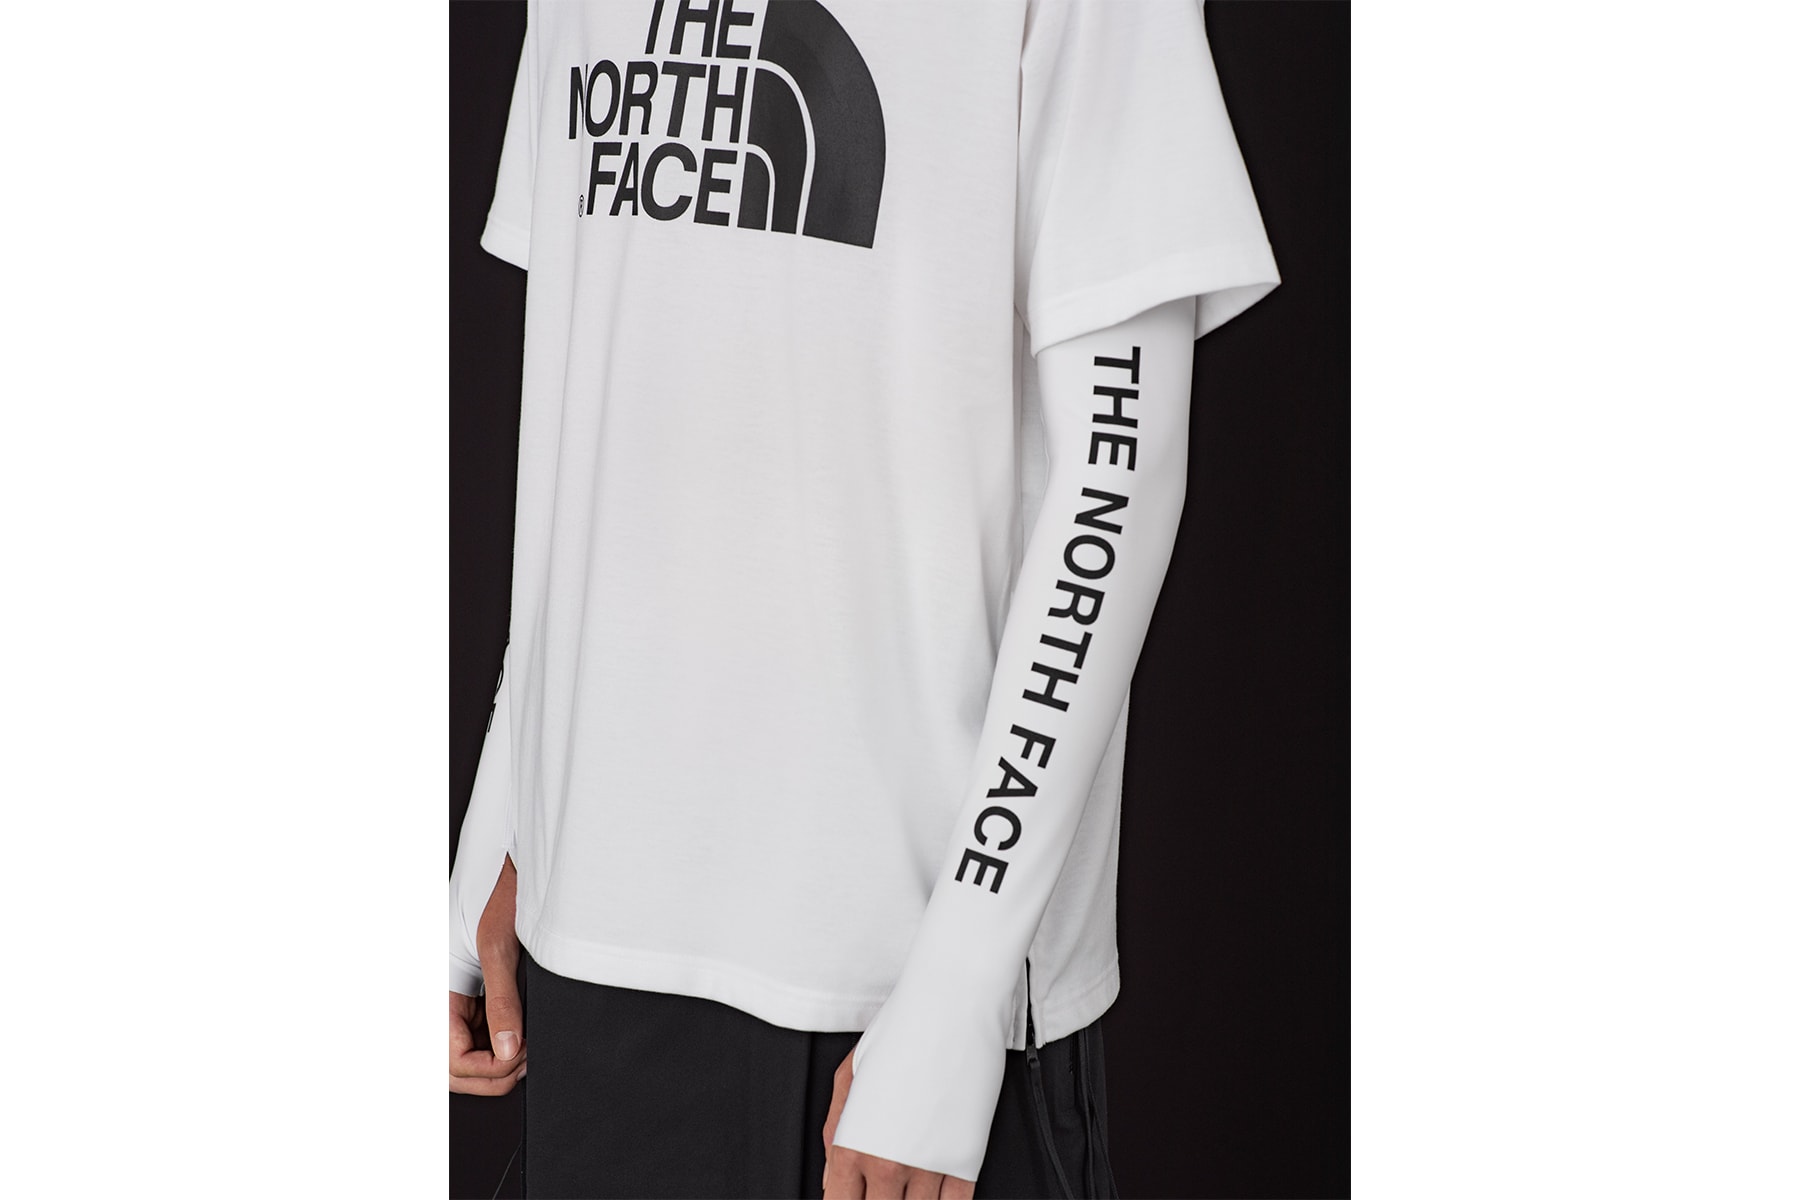 THE NORTH FACE x HYKE ハイク ノースフェイス メンズ ライン 2019年春夏 コレクション